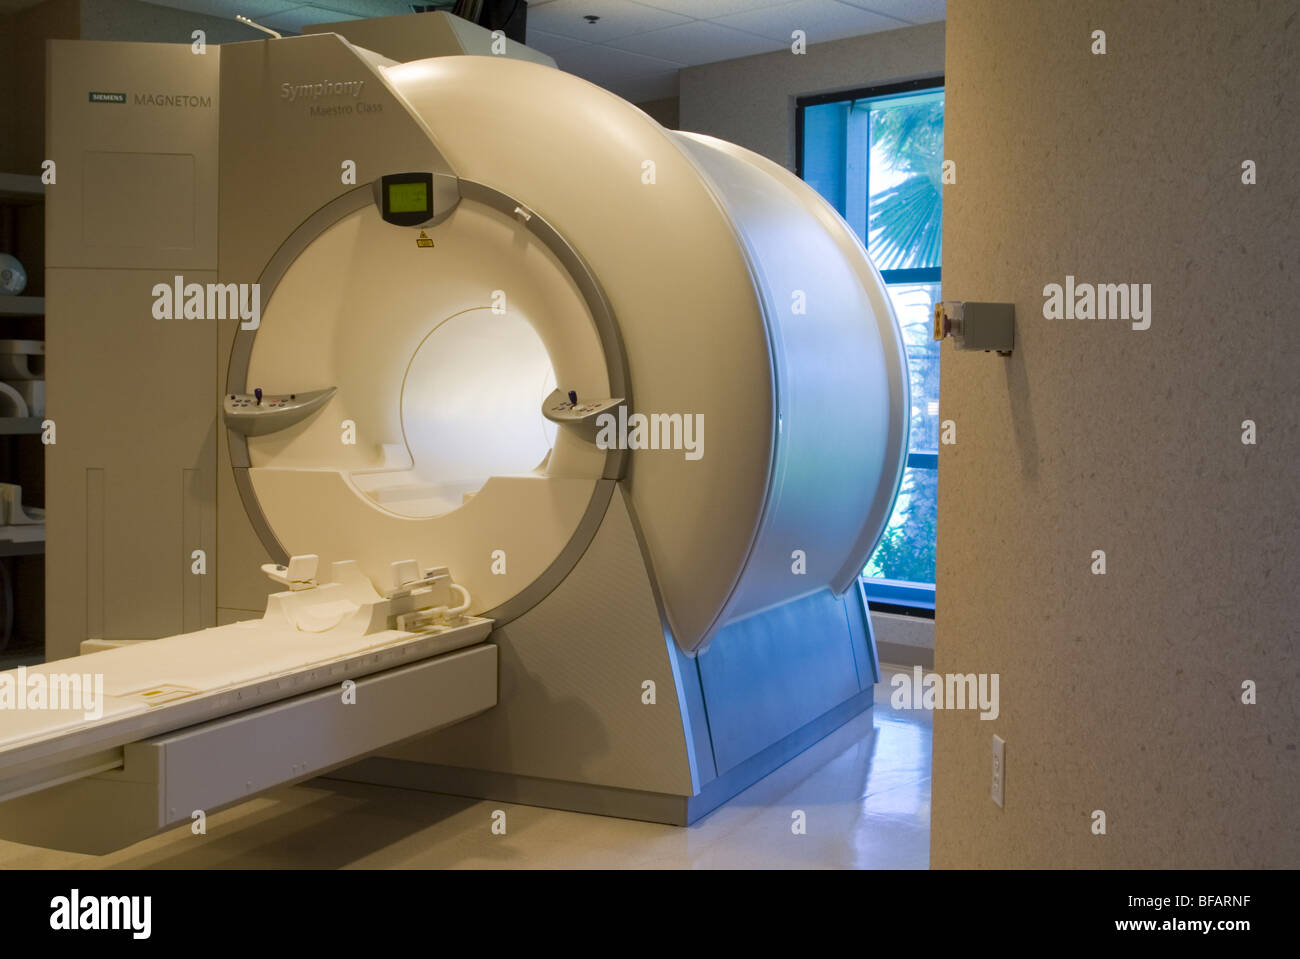 Nouveau dispositif d'imagerie médicale, cat scan machine. Banque D'Images